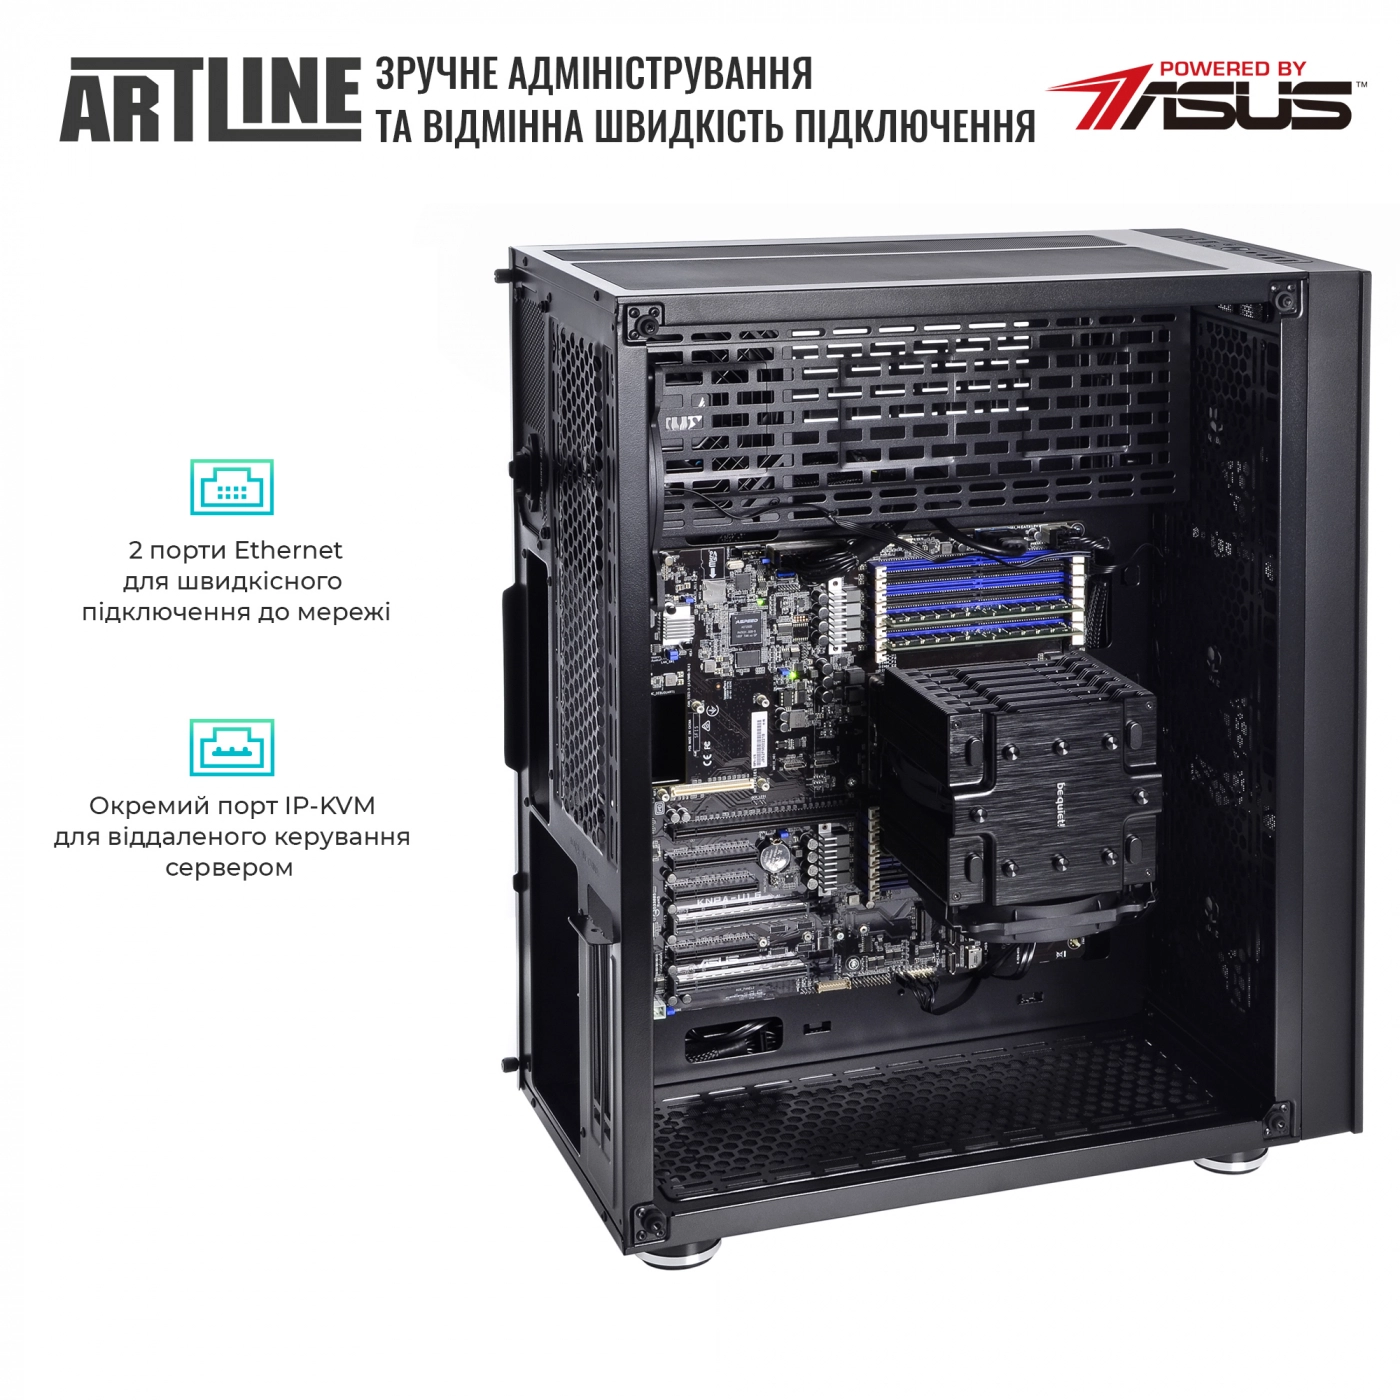 Купить Сервер ARTLINE Business T81v11 - фото 7